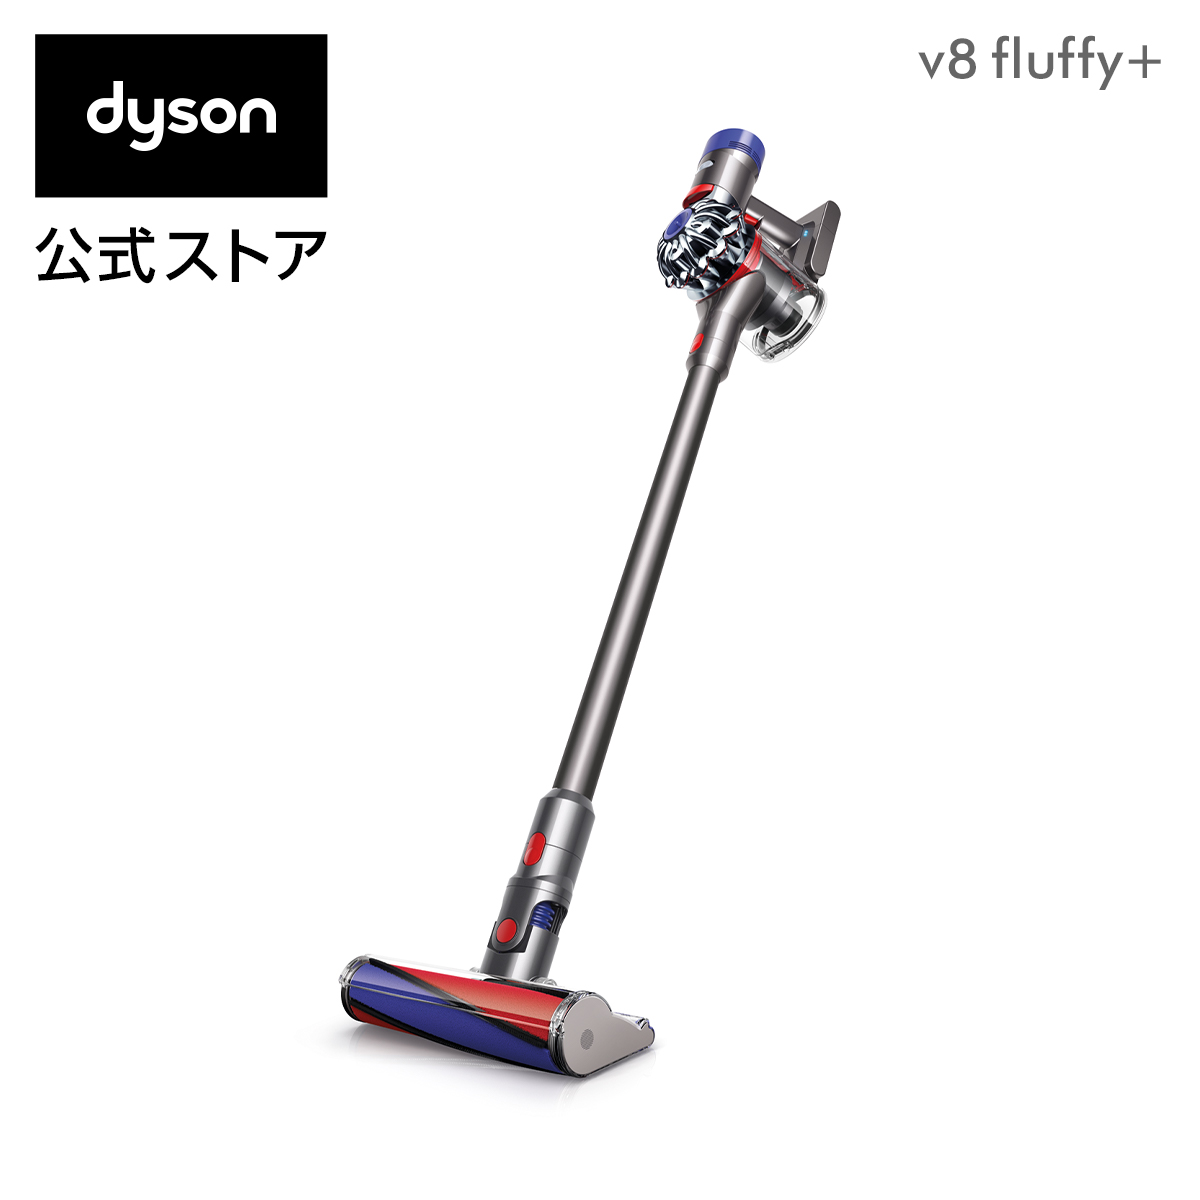 ダイソン Dyson V8 Fluffy+ サイクロン式 コードレス掃除機 SV10FFCOM2 アイアン 2017年モデル